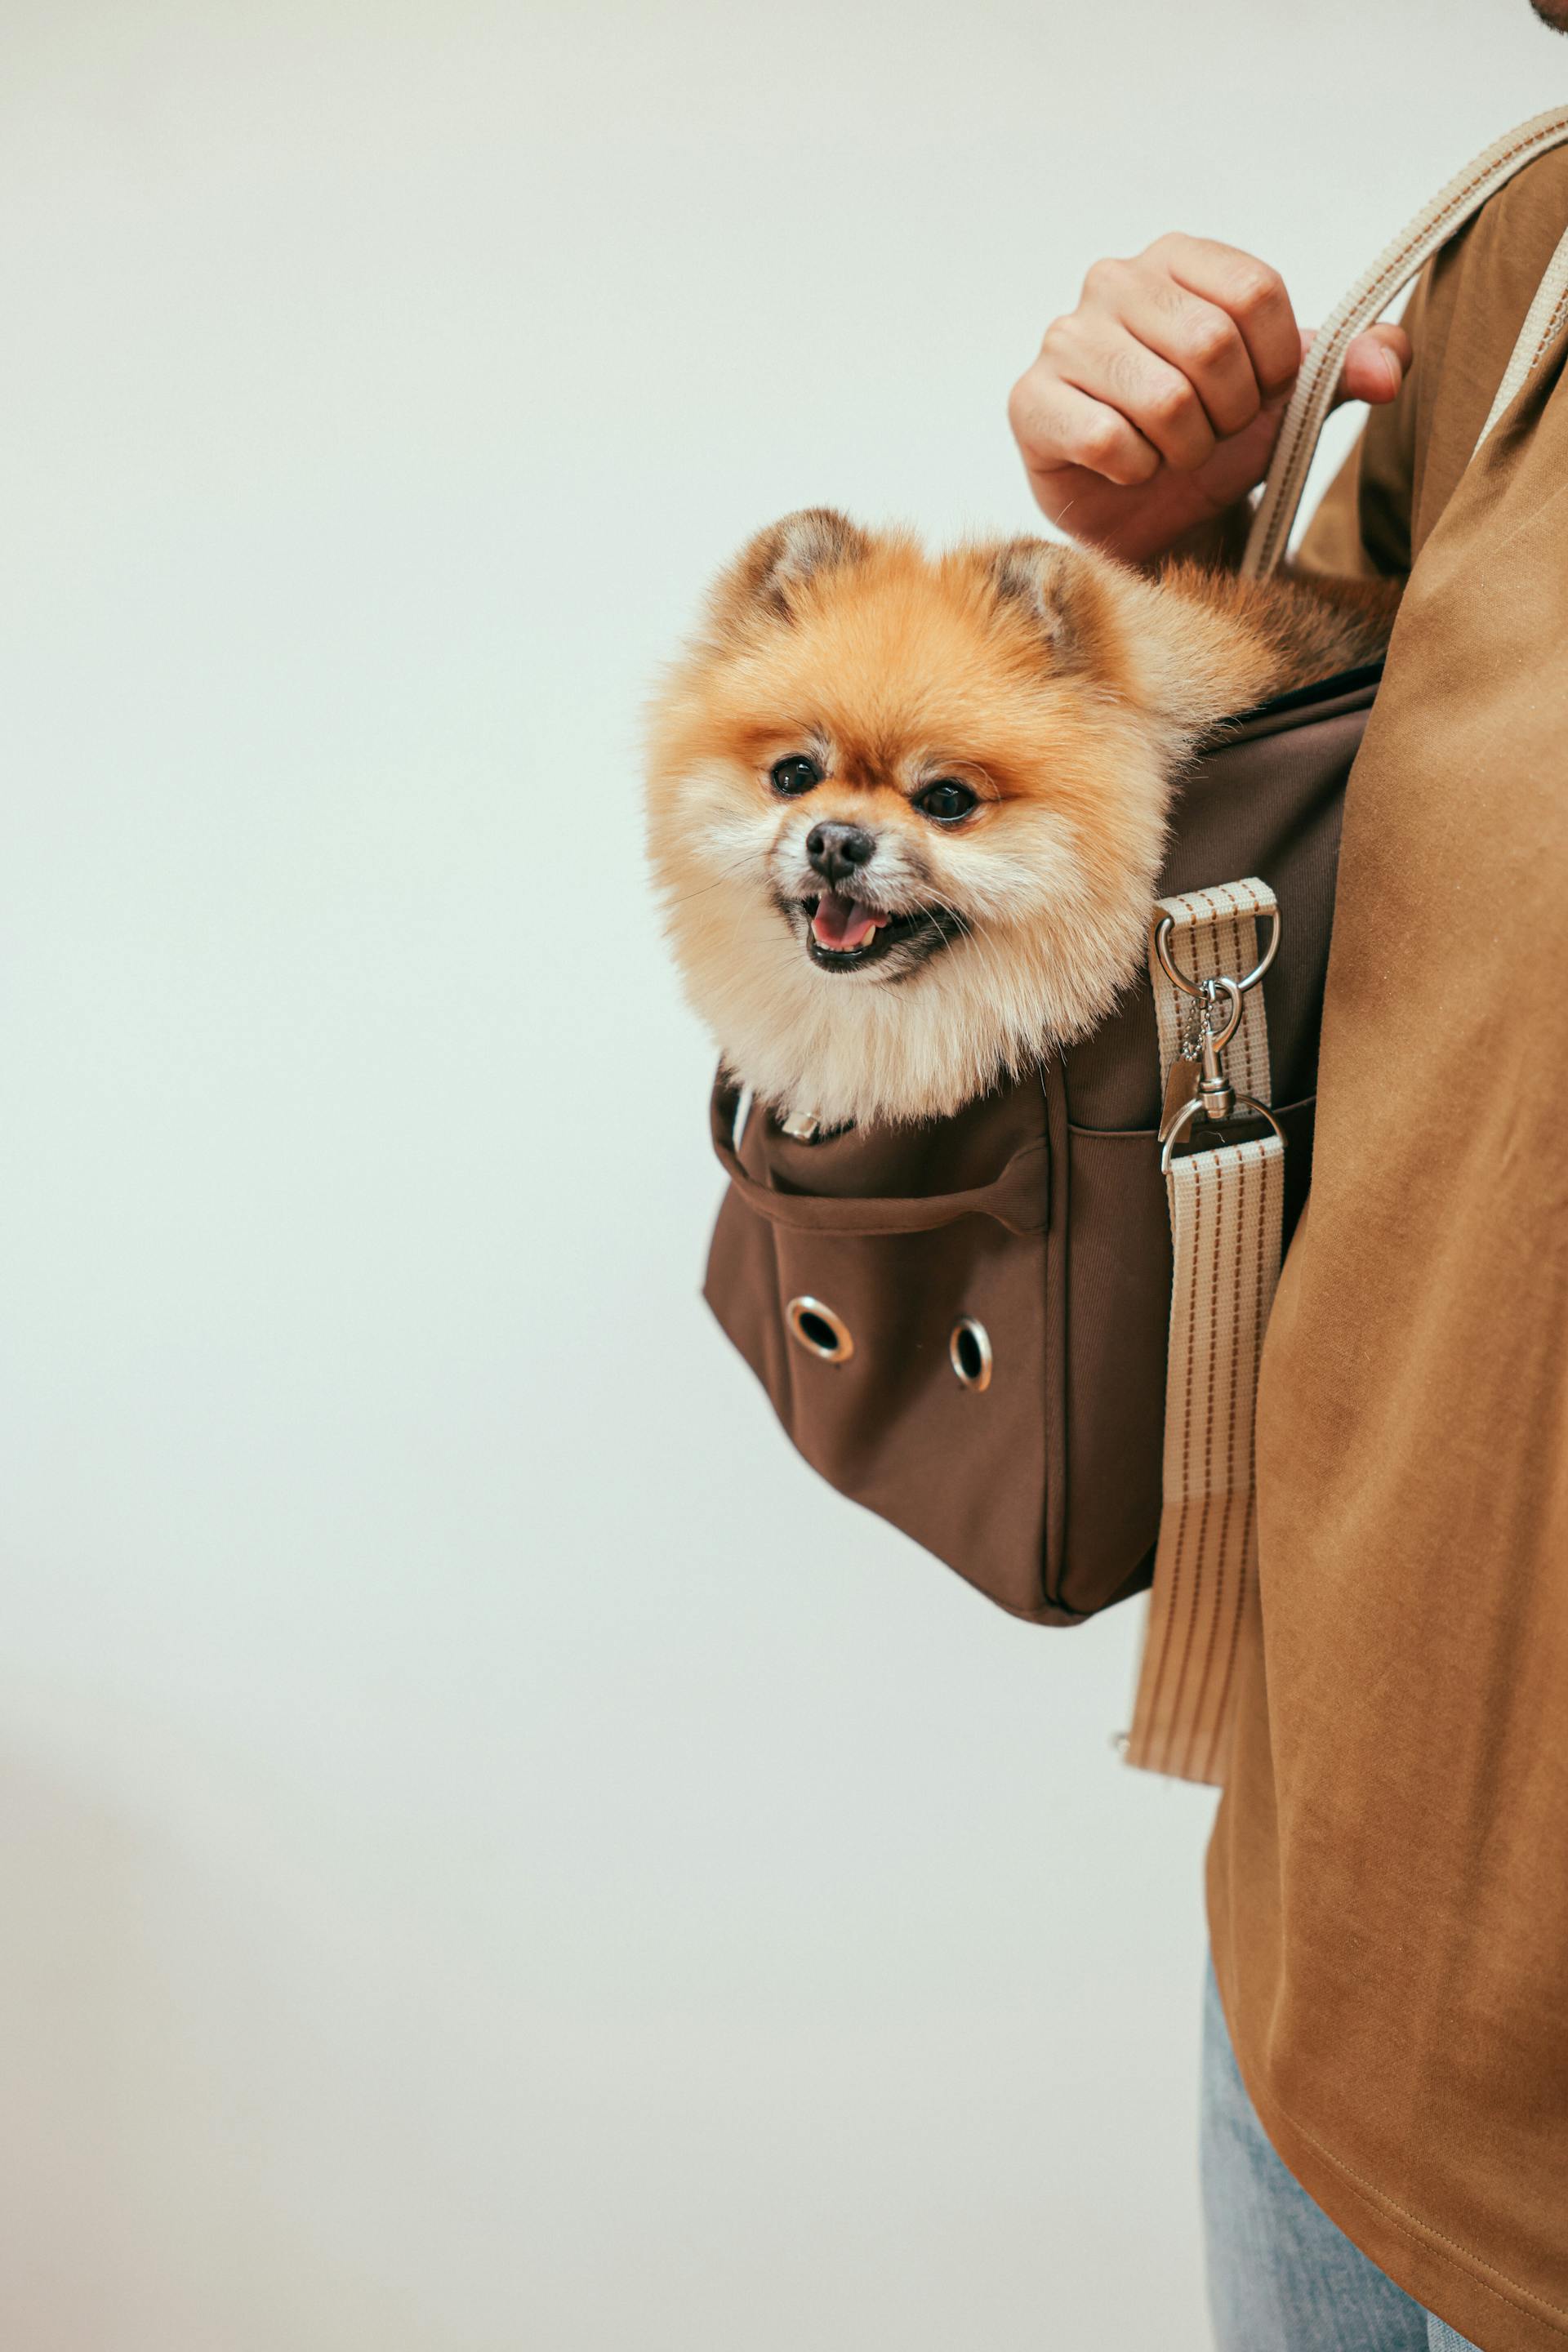 Eine Person, die einen Hund in einer Tasche trägt | Quelle: Pexels